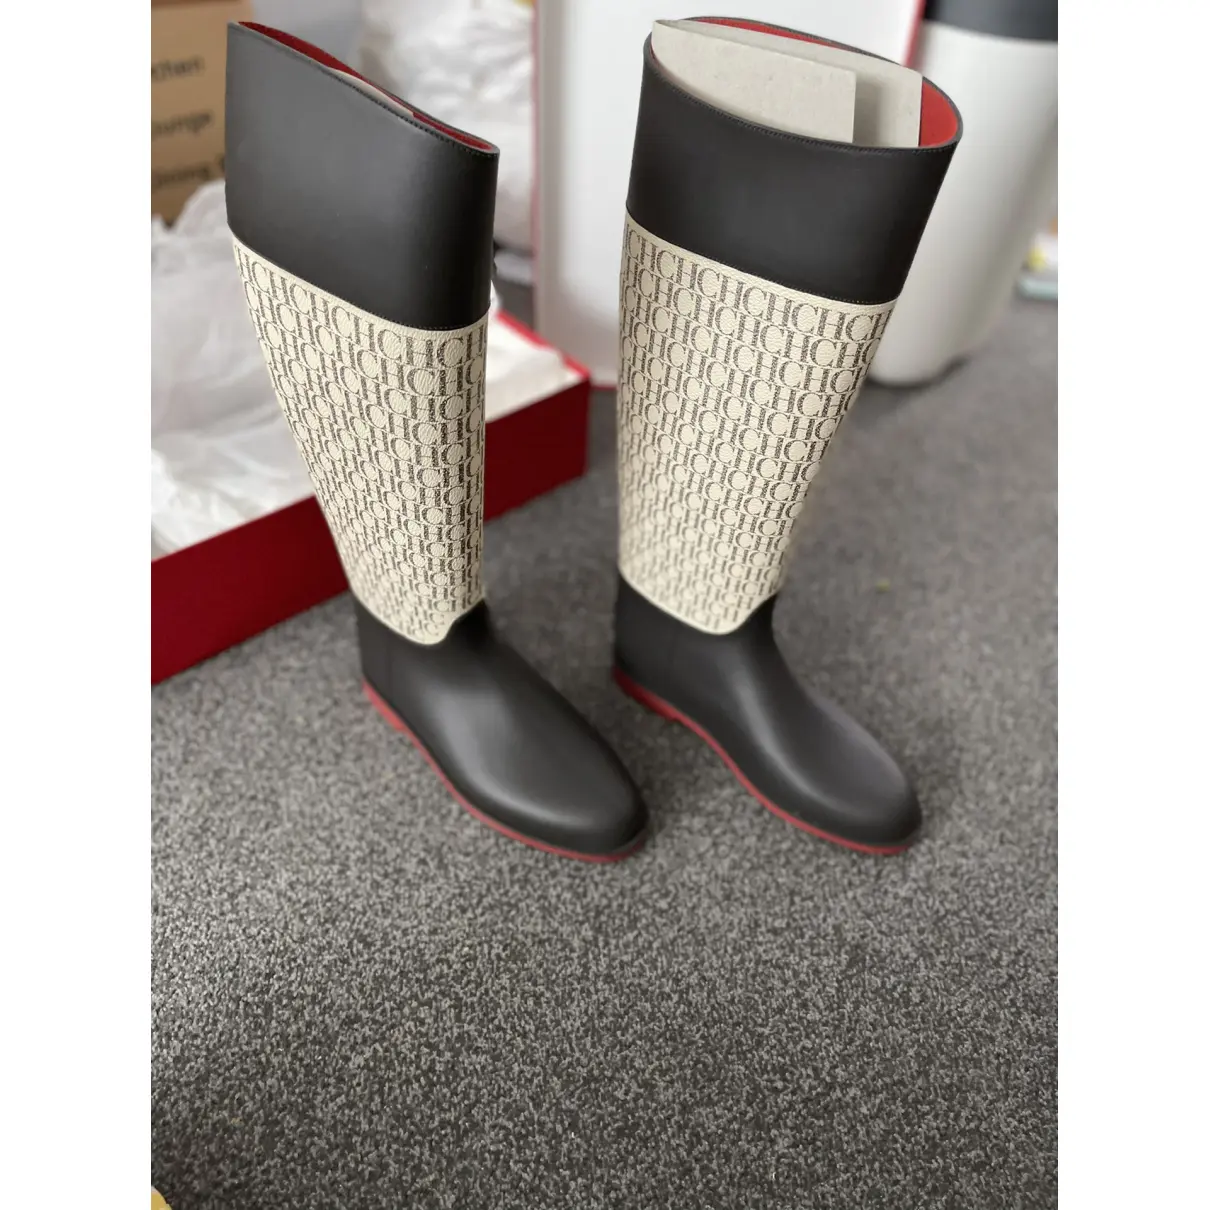 Buy Carolina Herrera Wellington boots online